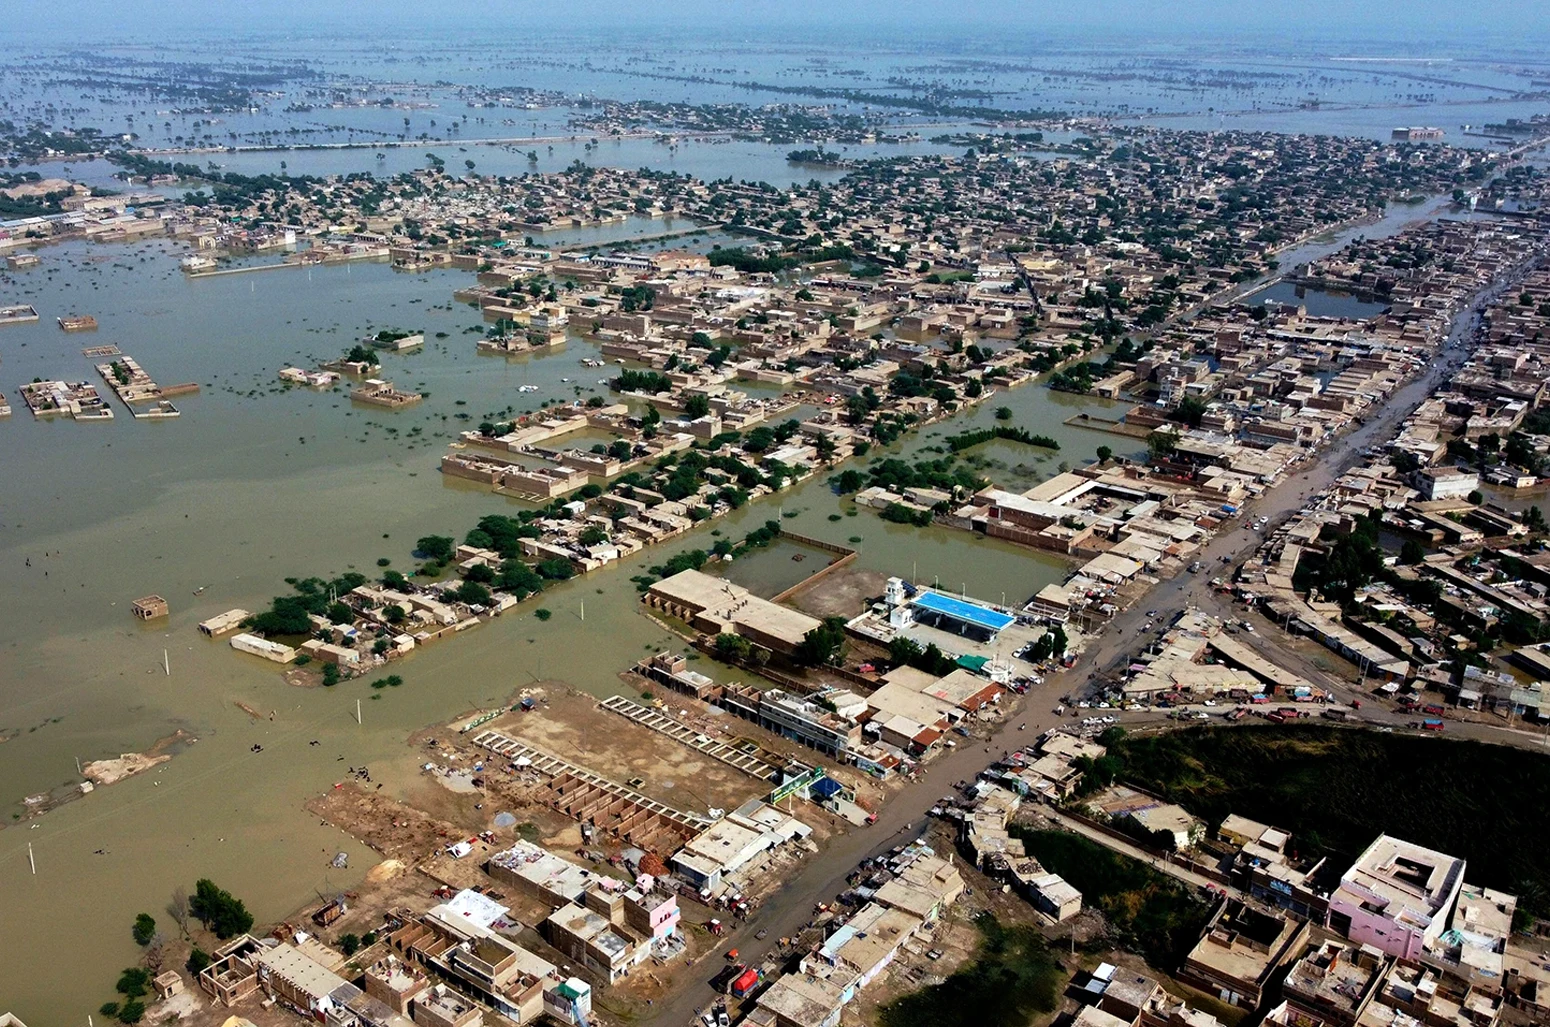 Дома окружены паводковыми водами в городе Сохбат Пур, районе юго-западной пакистанской провинции Белуджистан, 30 августа 2022 года.